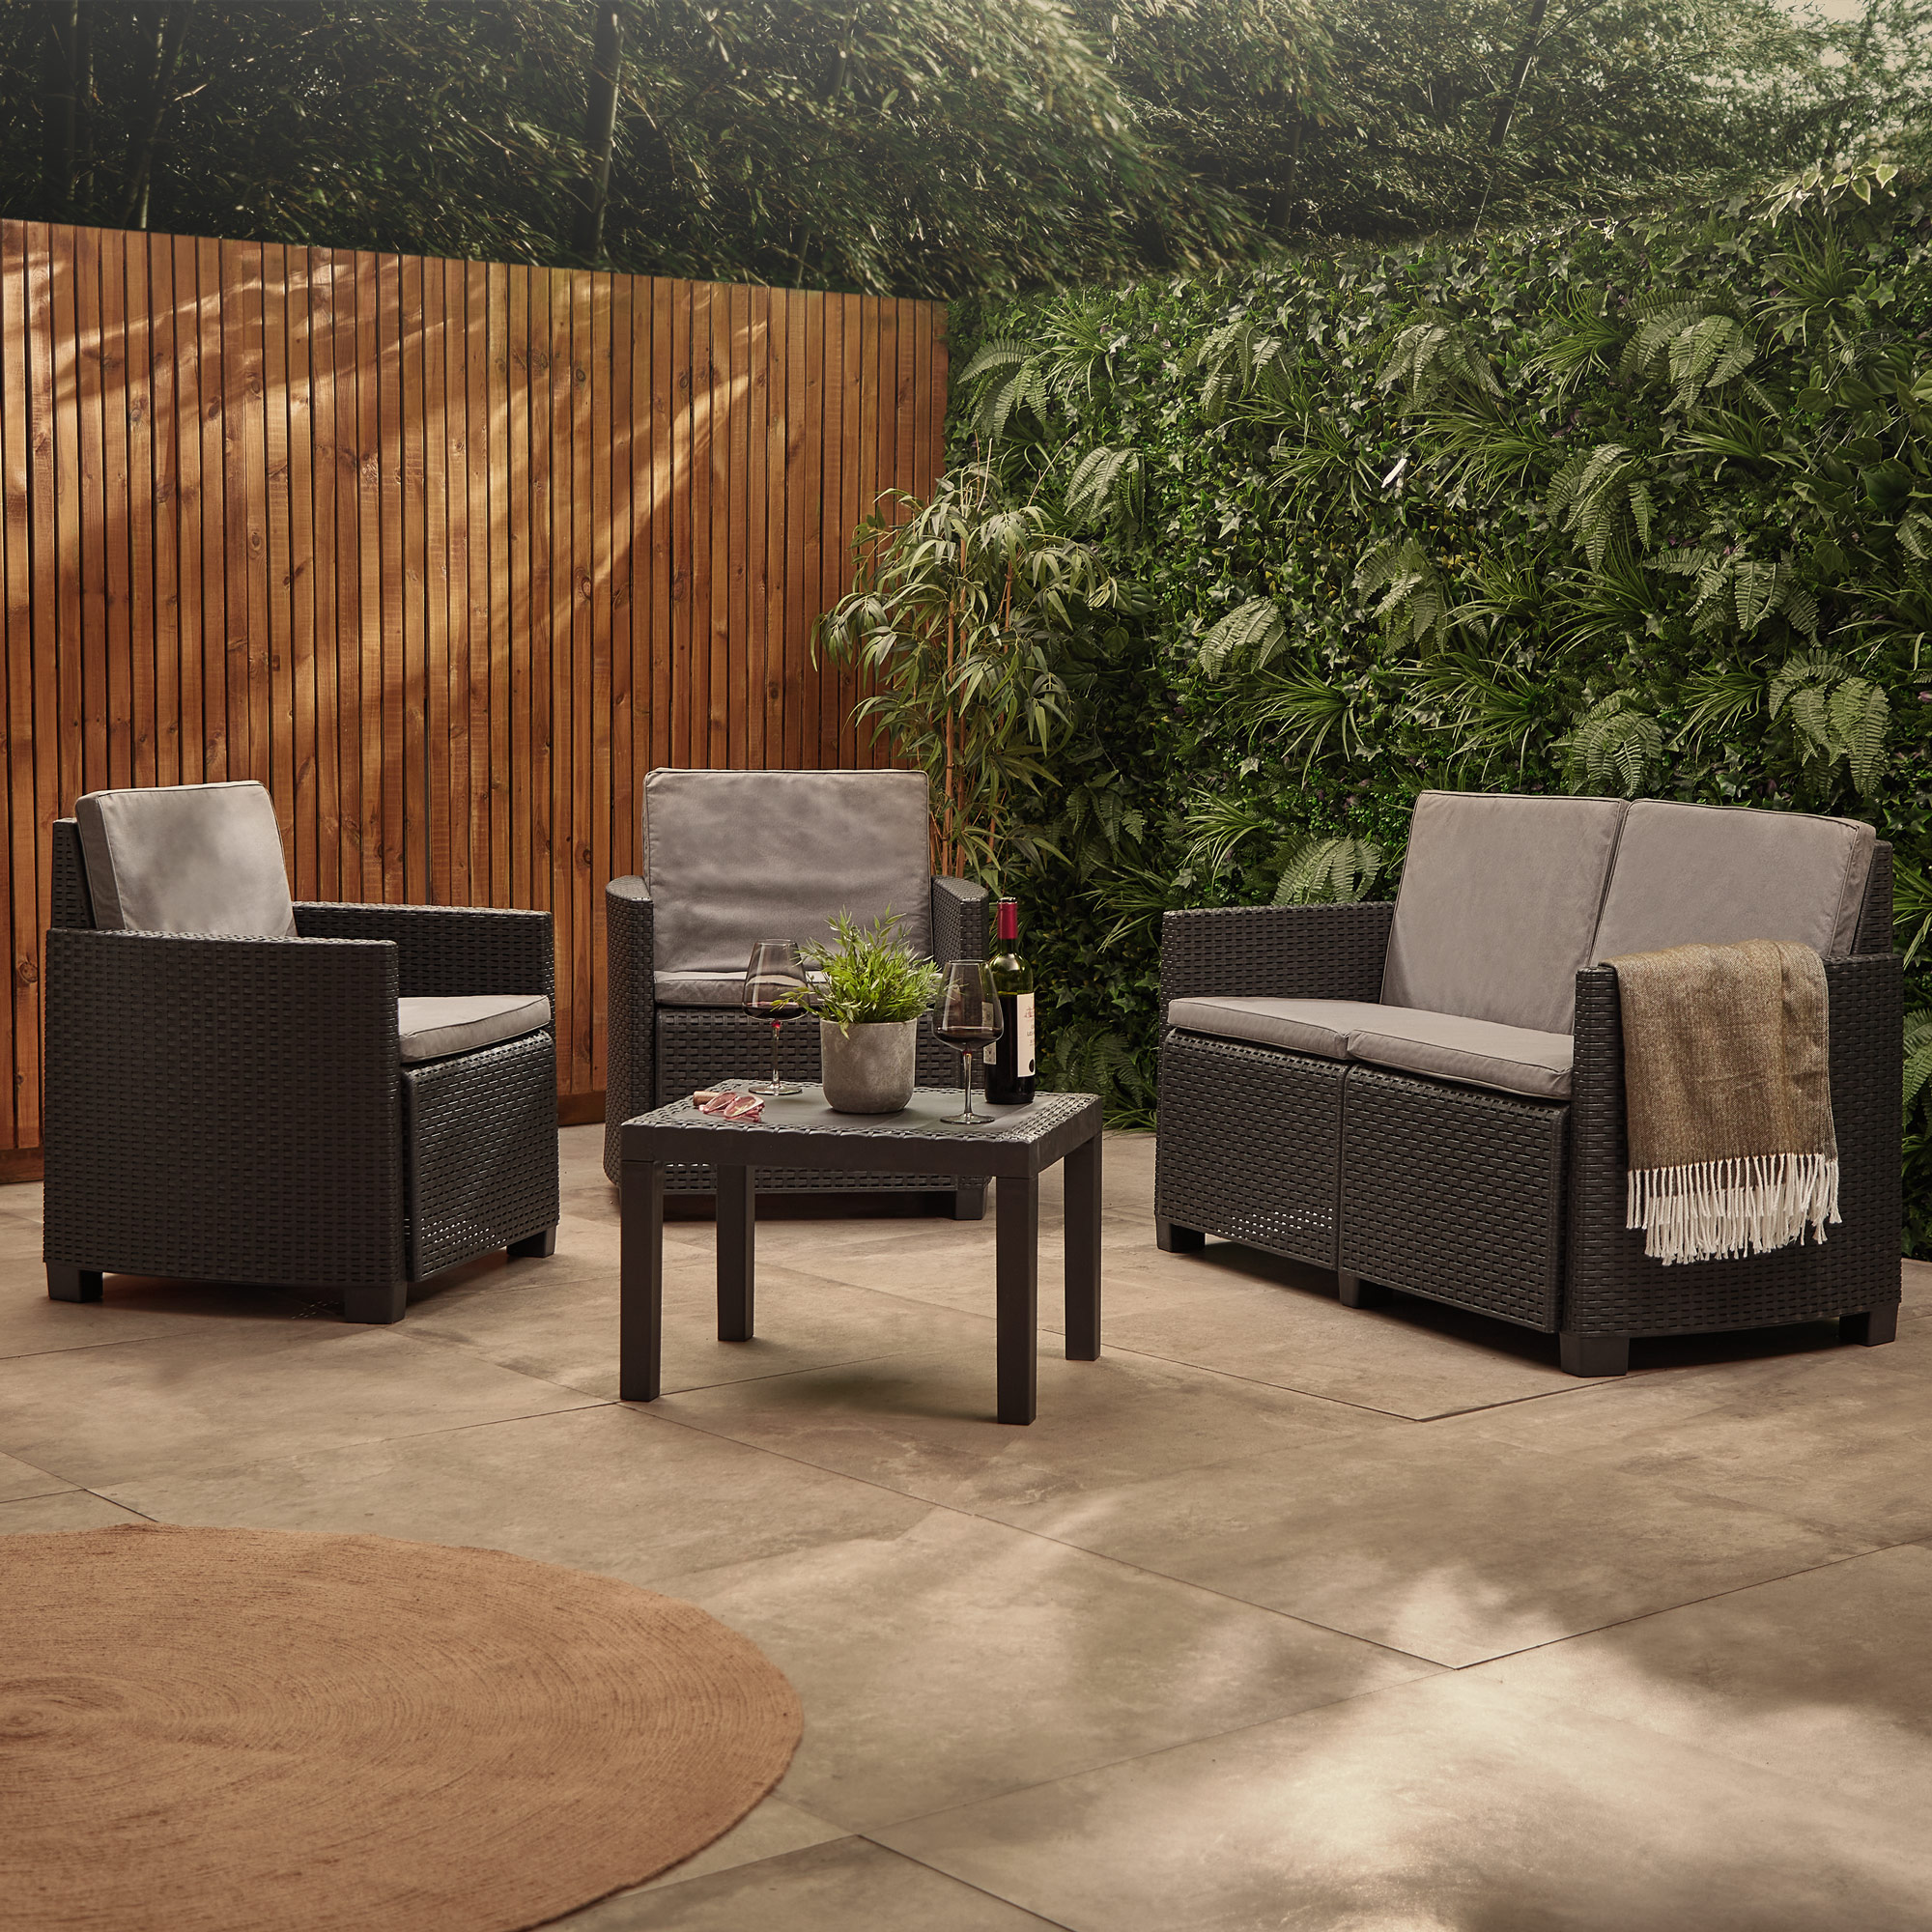 Image for Win a VonHaus.com 4 seater outdoor sofa set